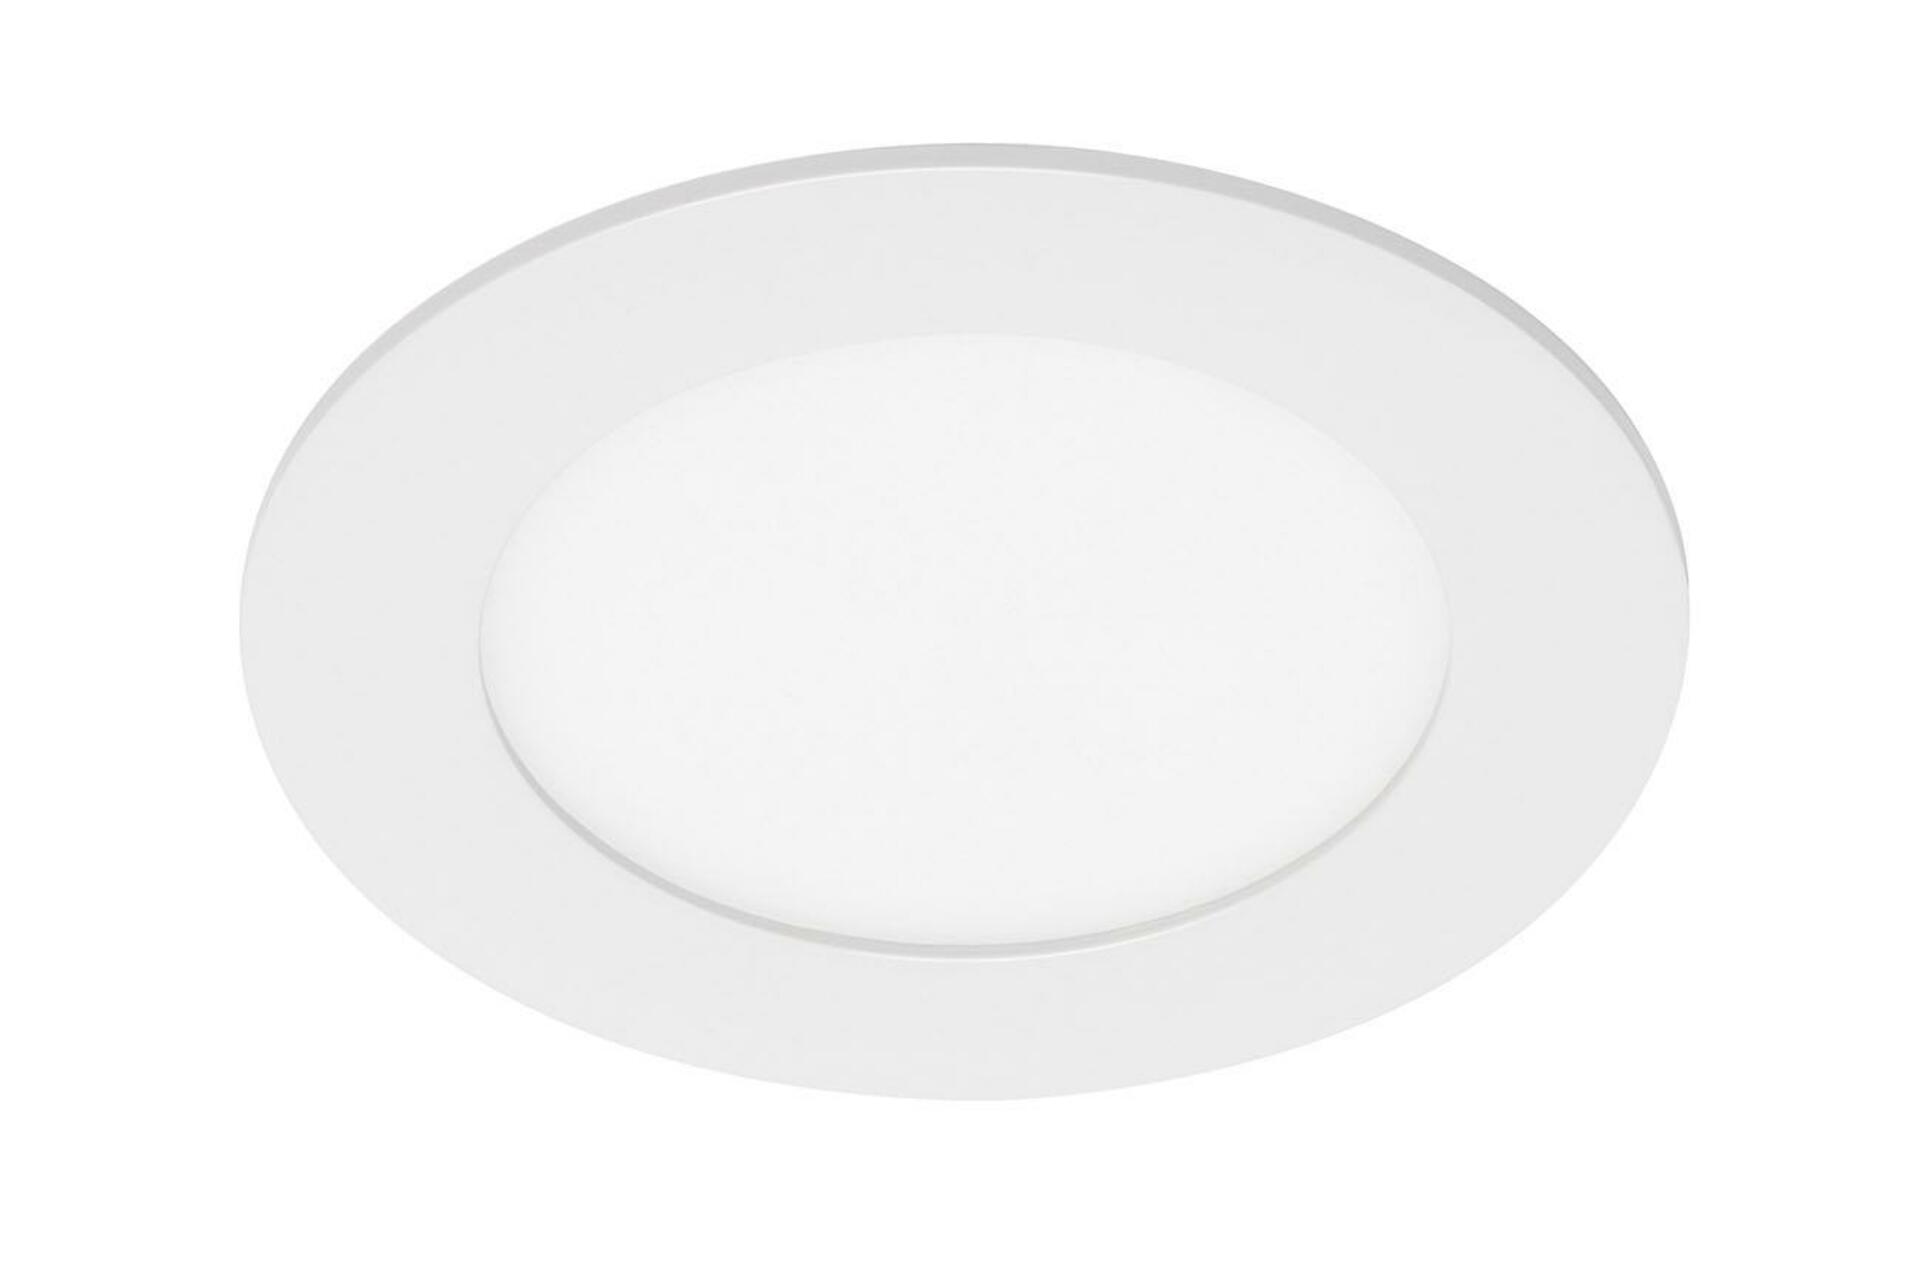 BRILONER LED vestavné svítidlo, pr. 12 cm, 7 W, bílé BRI 7115-416